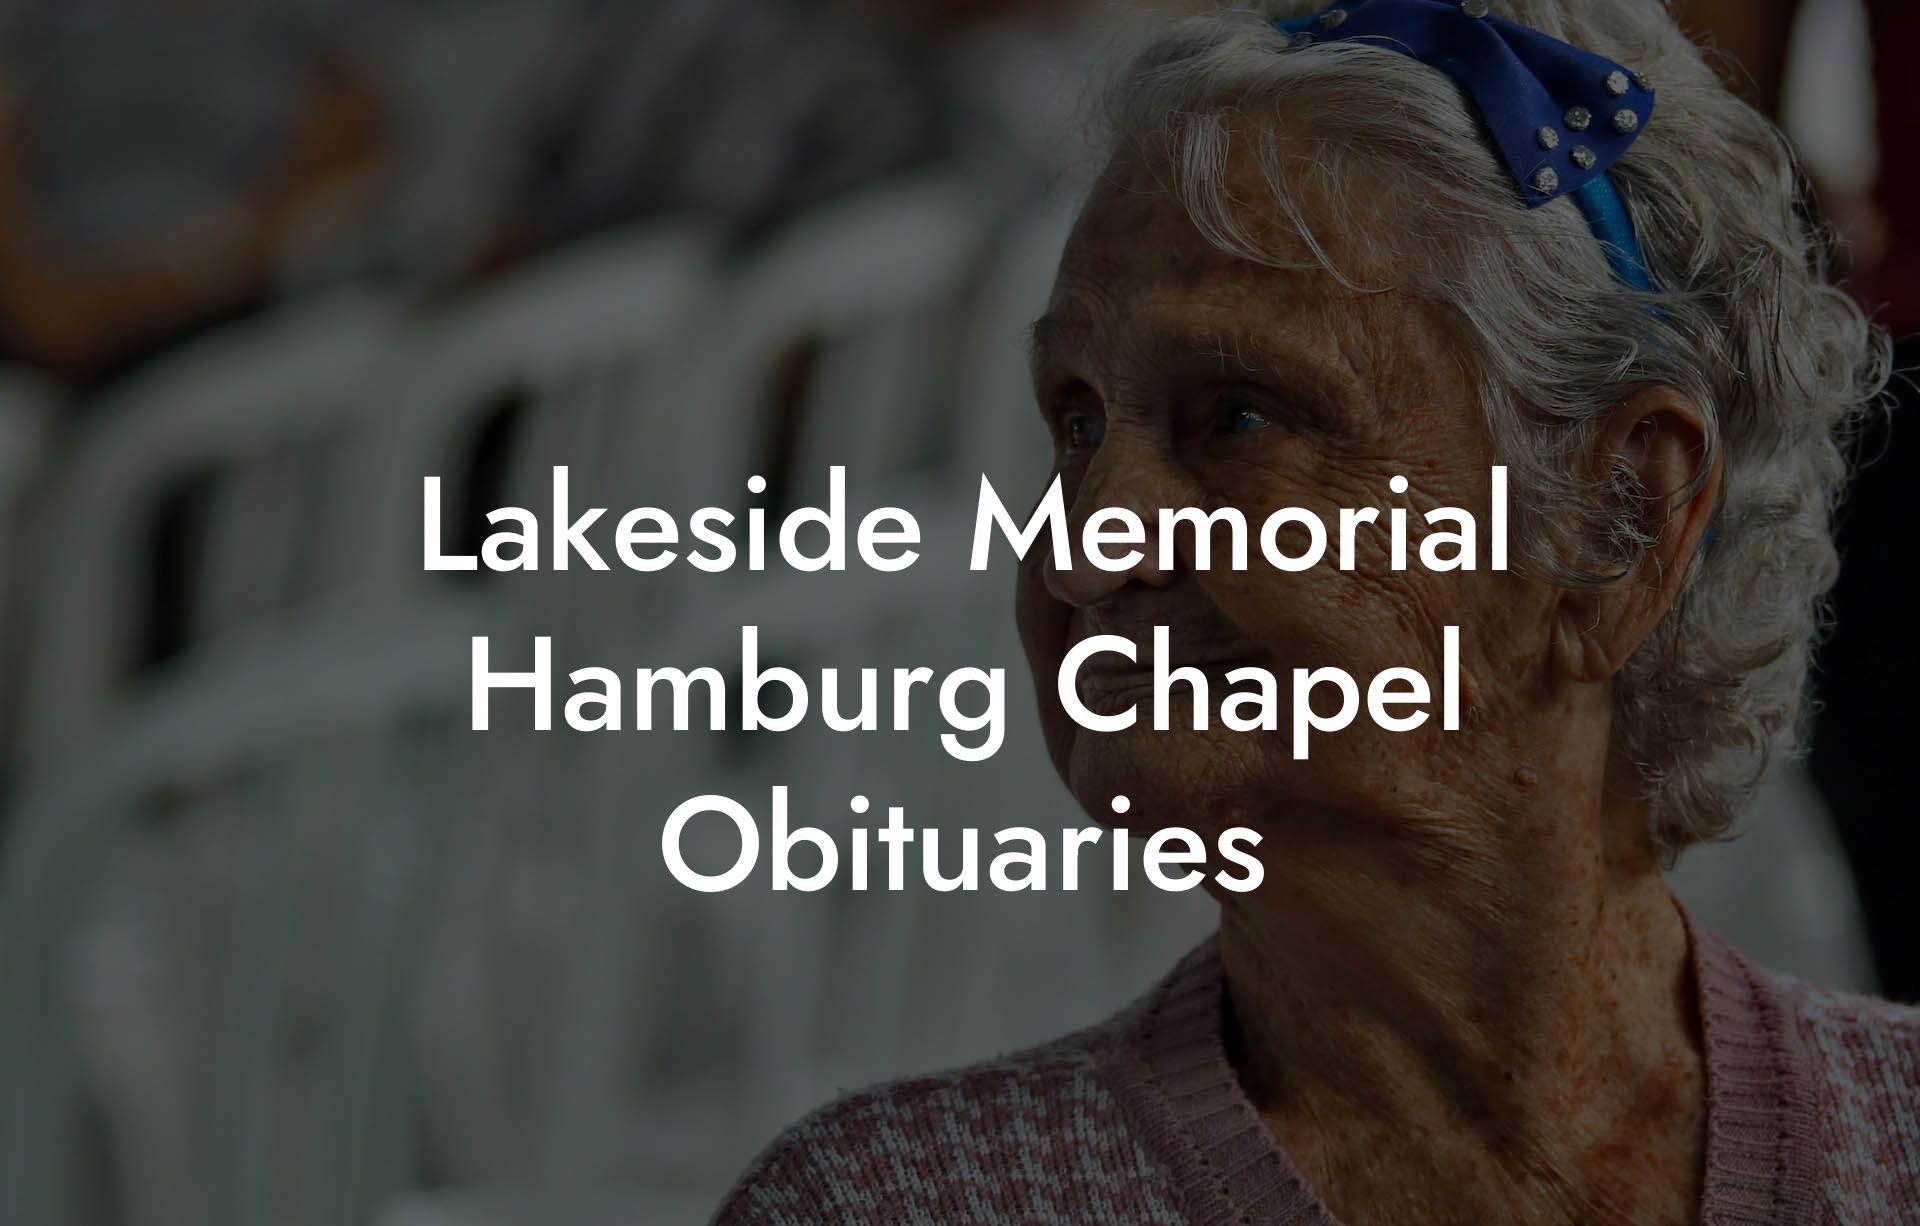 Lakeside Memorial Hamburg Chapel Obituaries